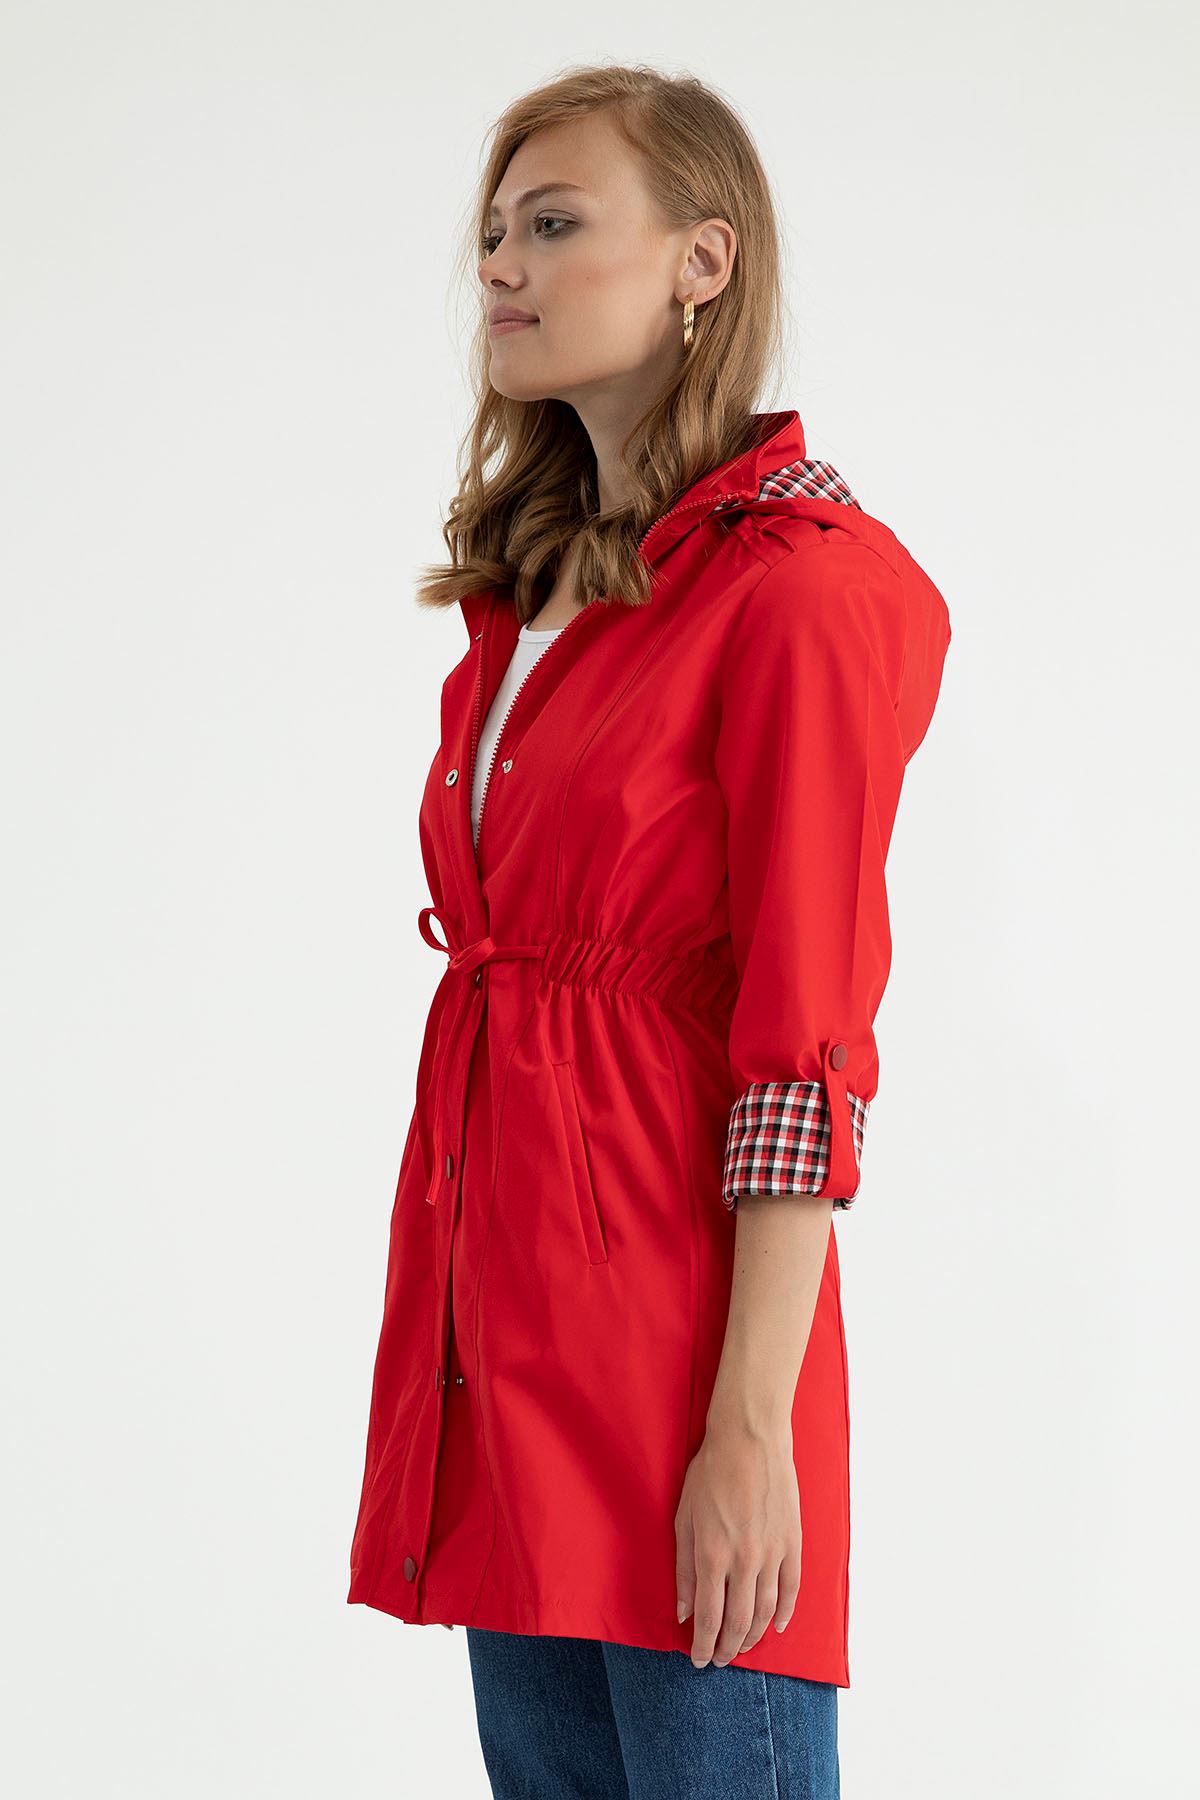 Woven Fabric Zip Neck Below The Hips Women Raincoat - Red